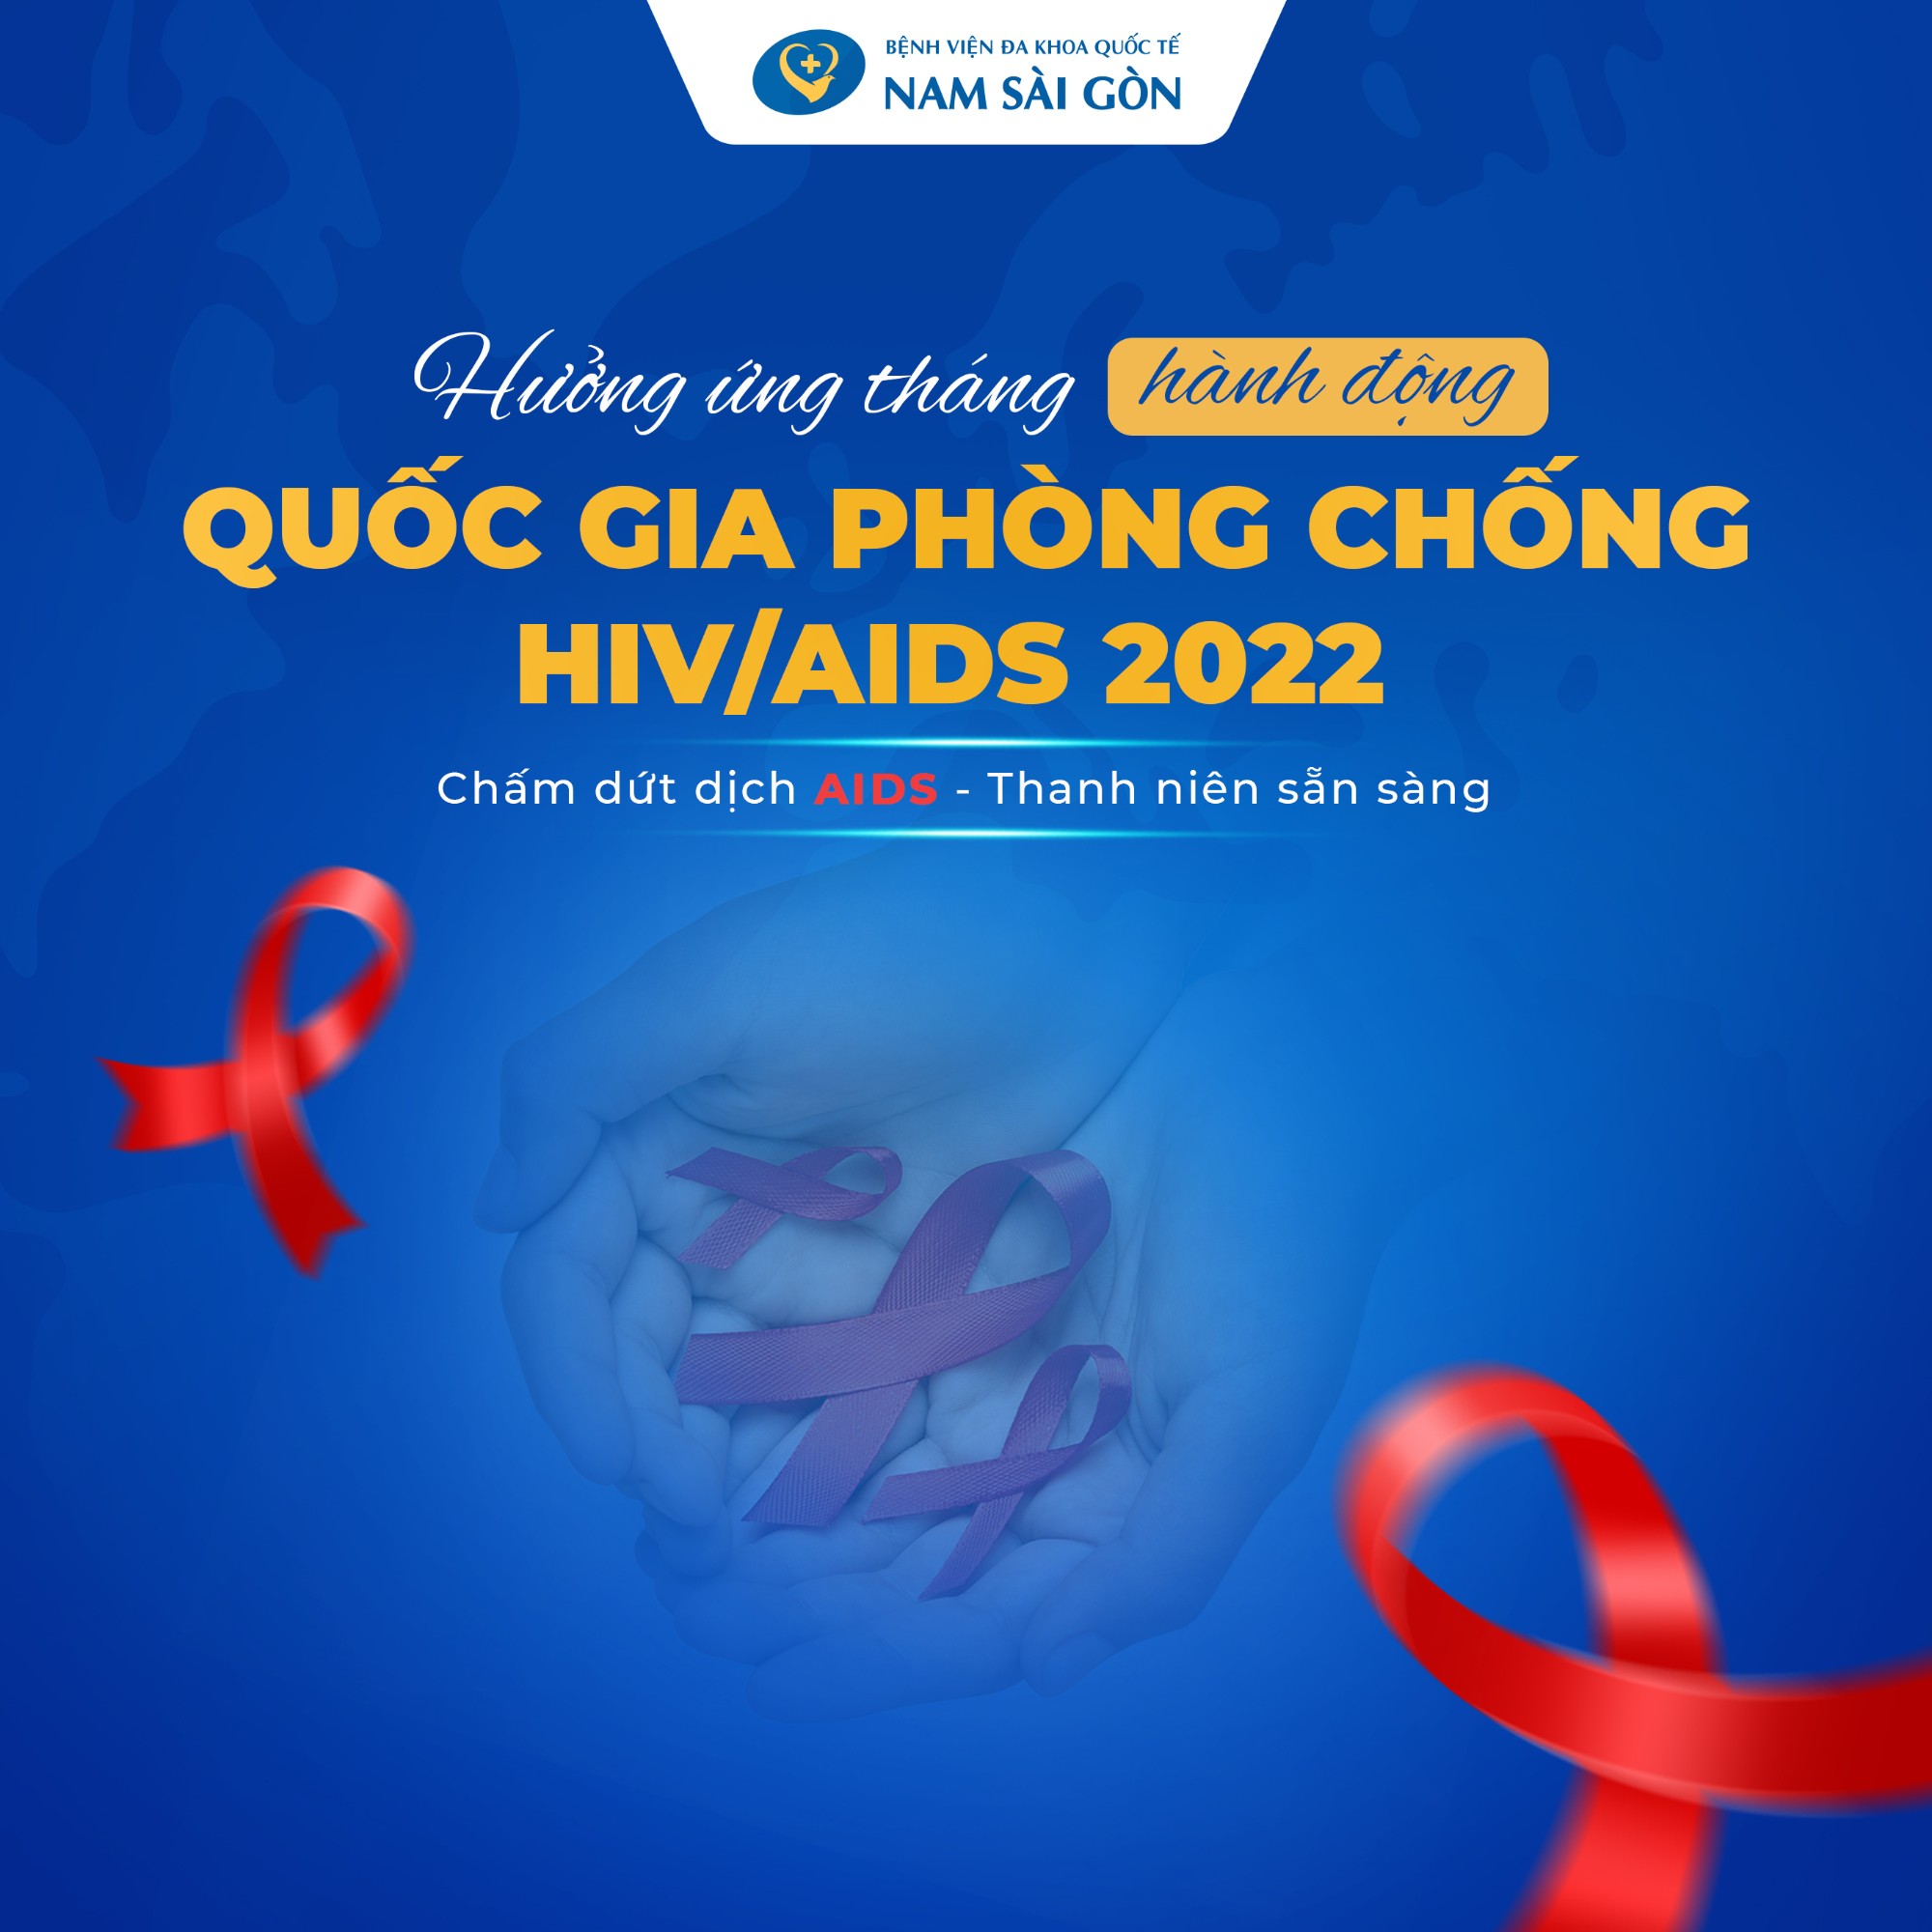 HƯỞNG ỨNG THÁNG HÀNH ĐỘNG QUỐC GIA PHÒNG CHỐNG HIV/AIDS 2022